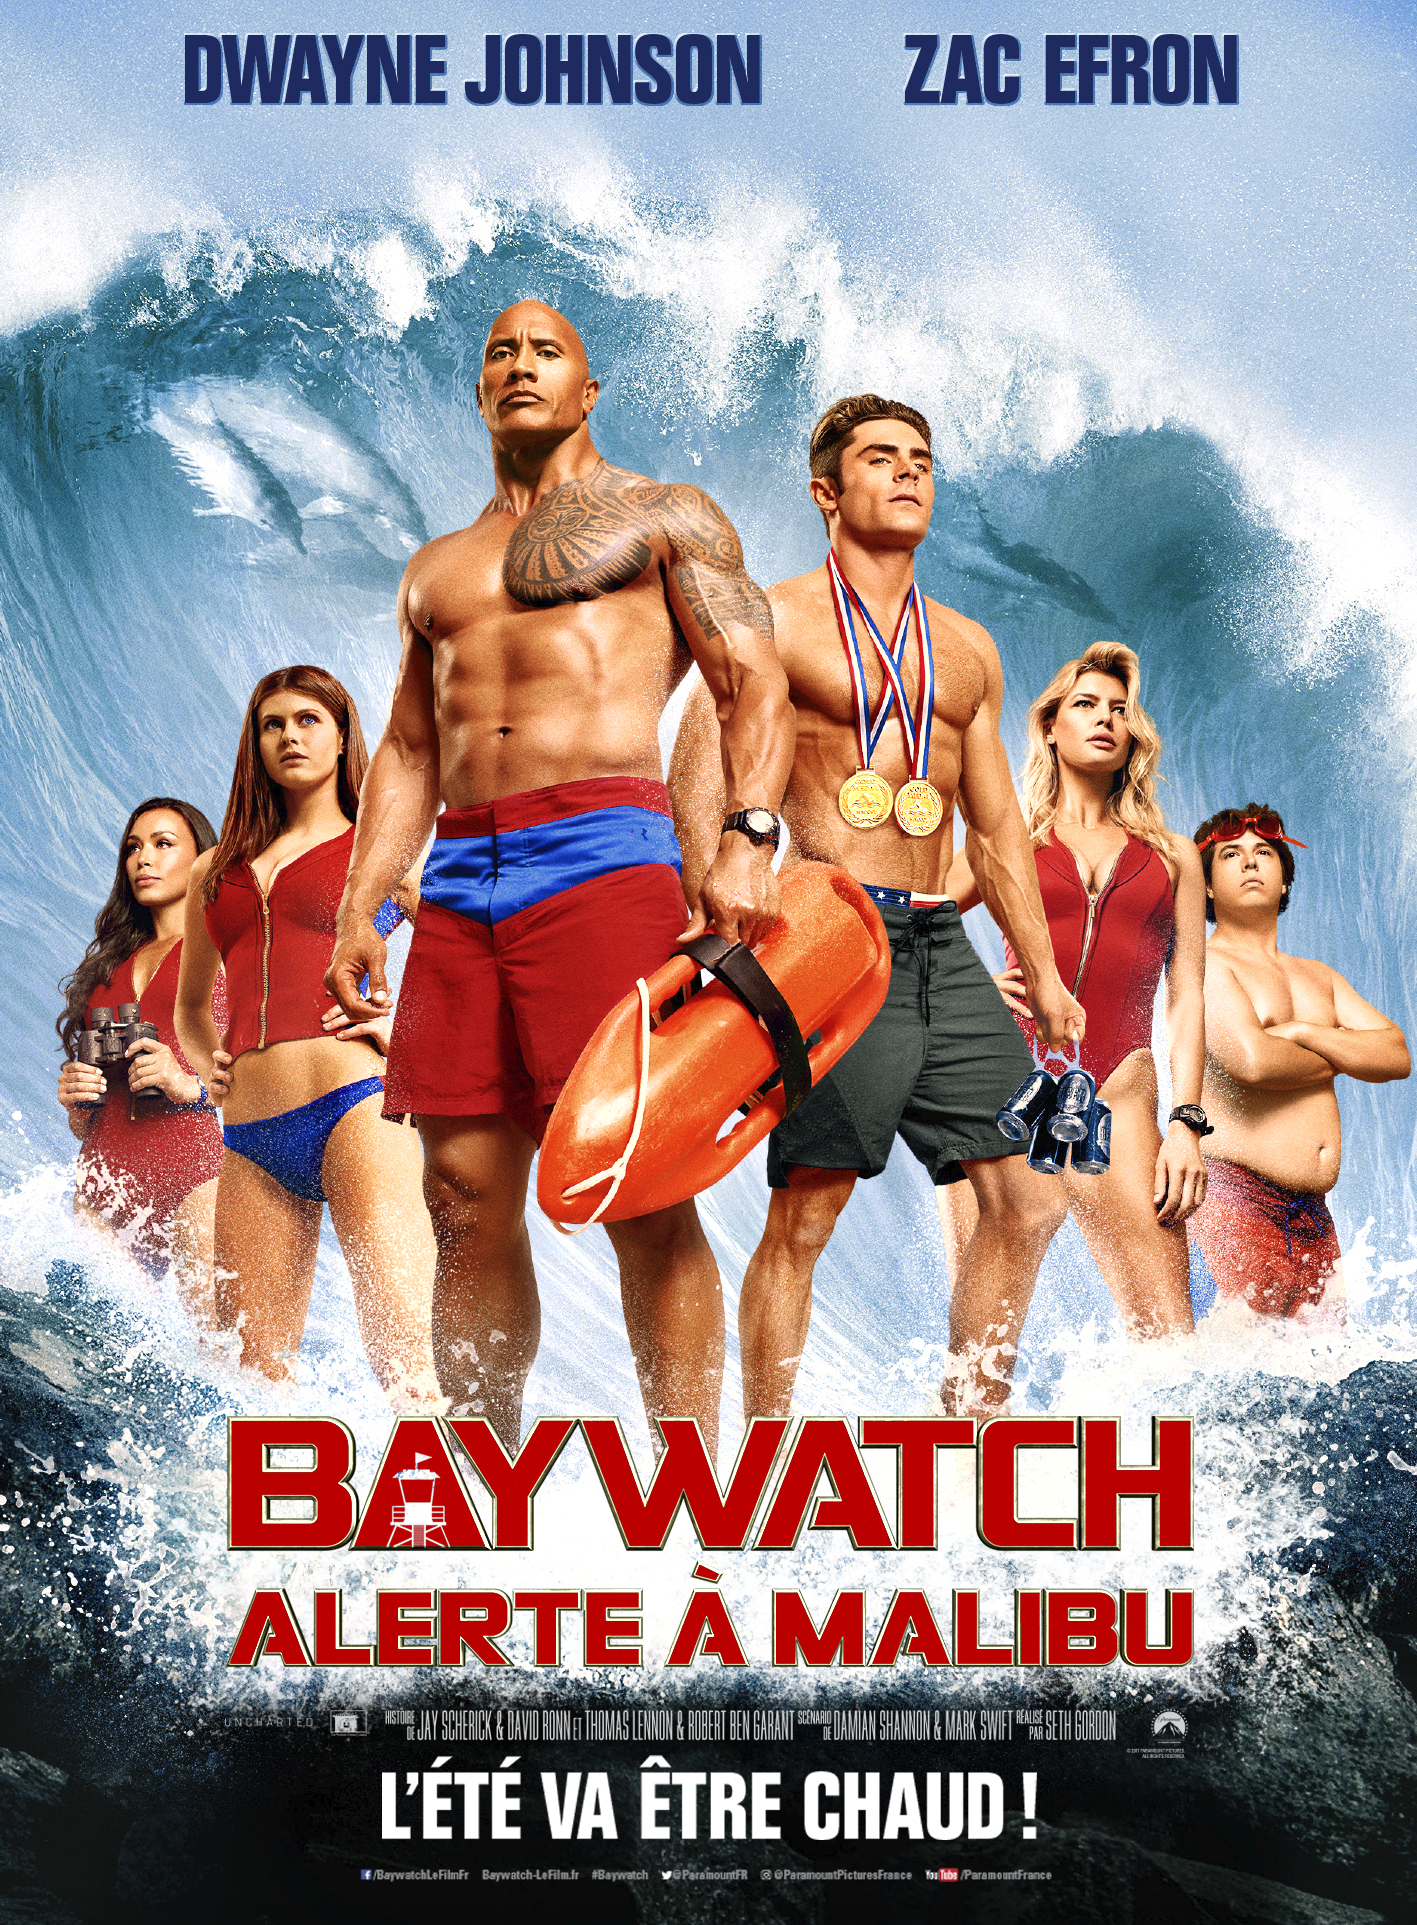 Baywatch – Alerte à Malibu